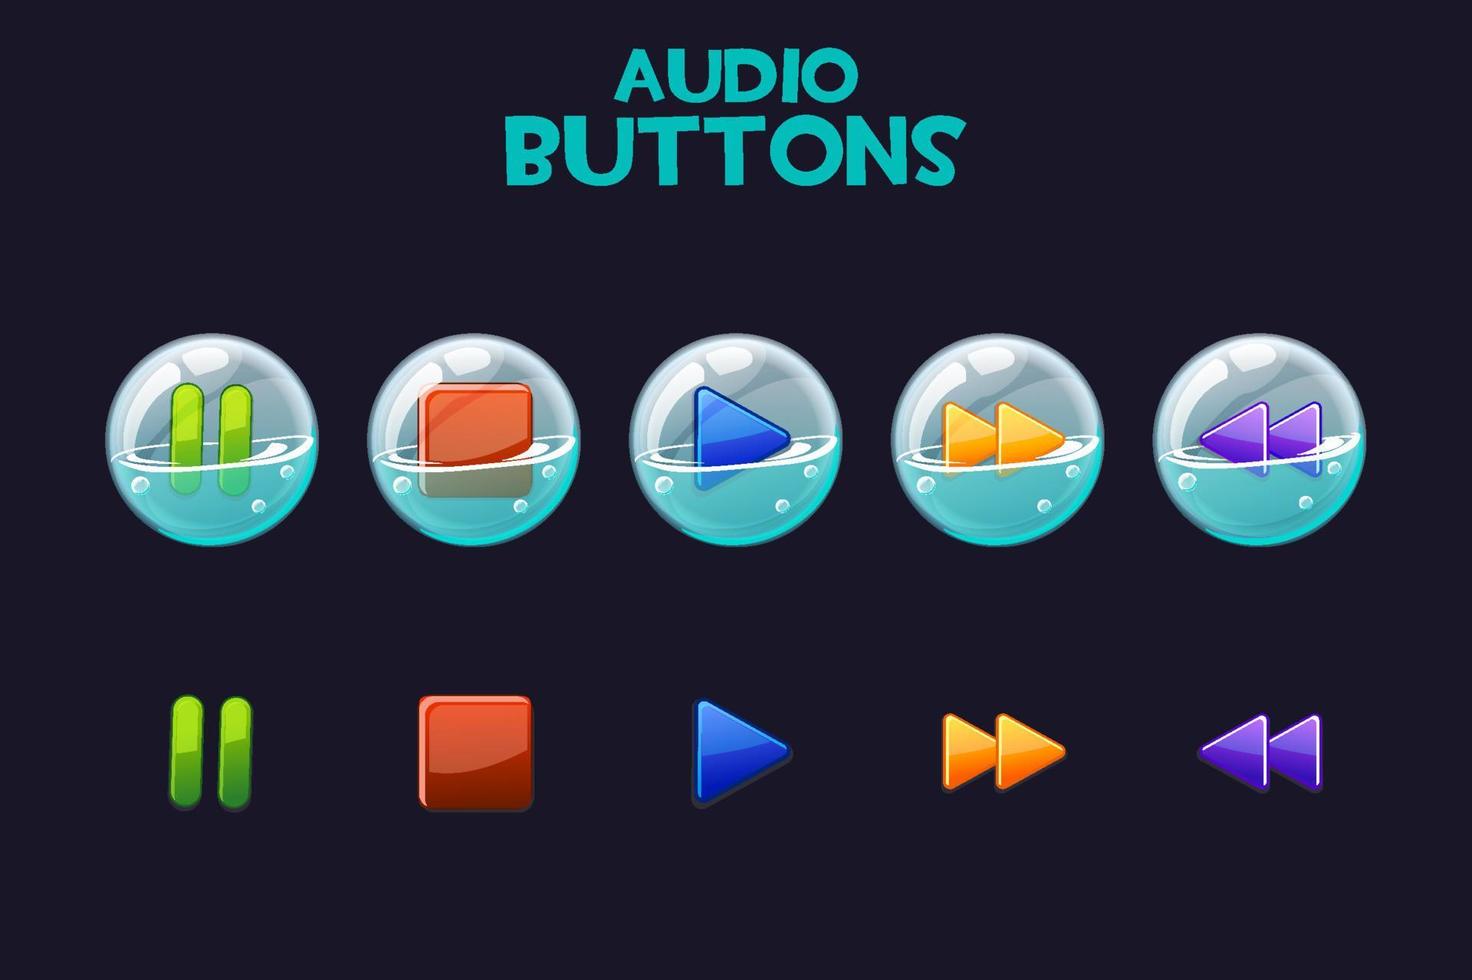 un conjunto de botones brillantes en pompas de jabón para reproducir audio. iconos multicolores para la interfaz de música. vector